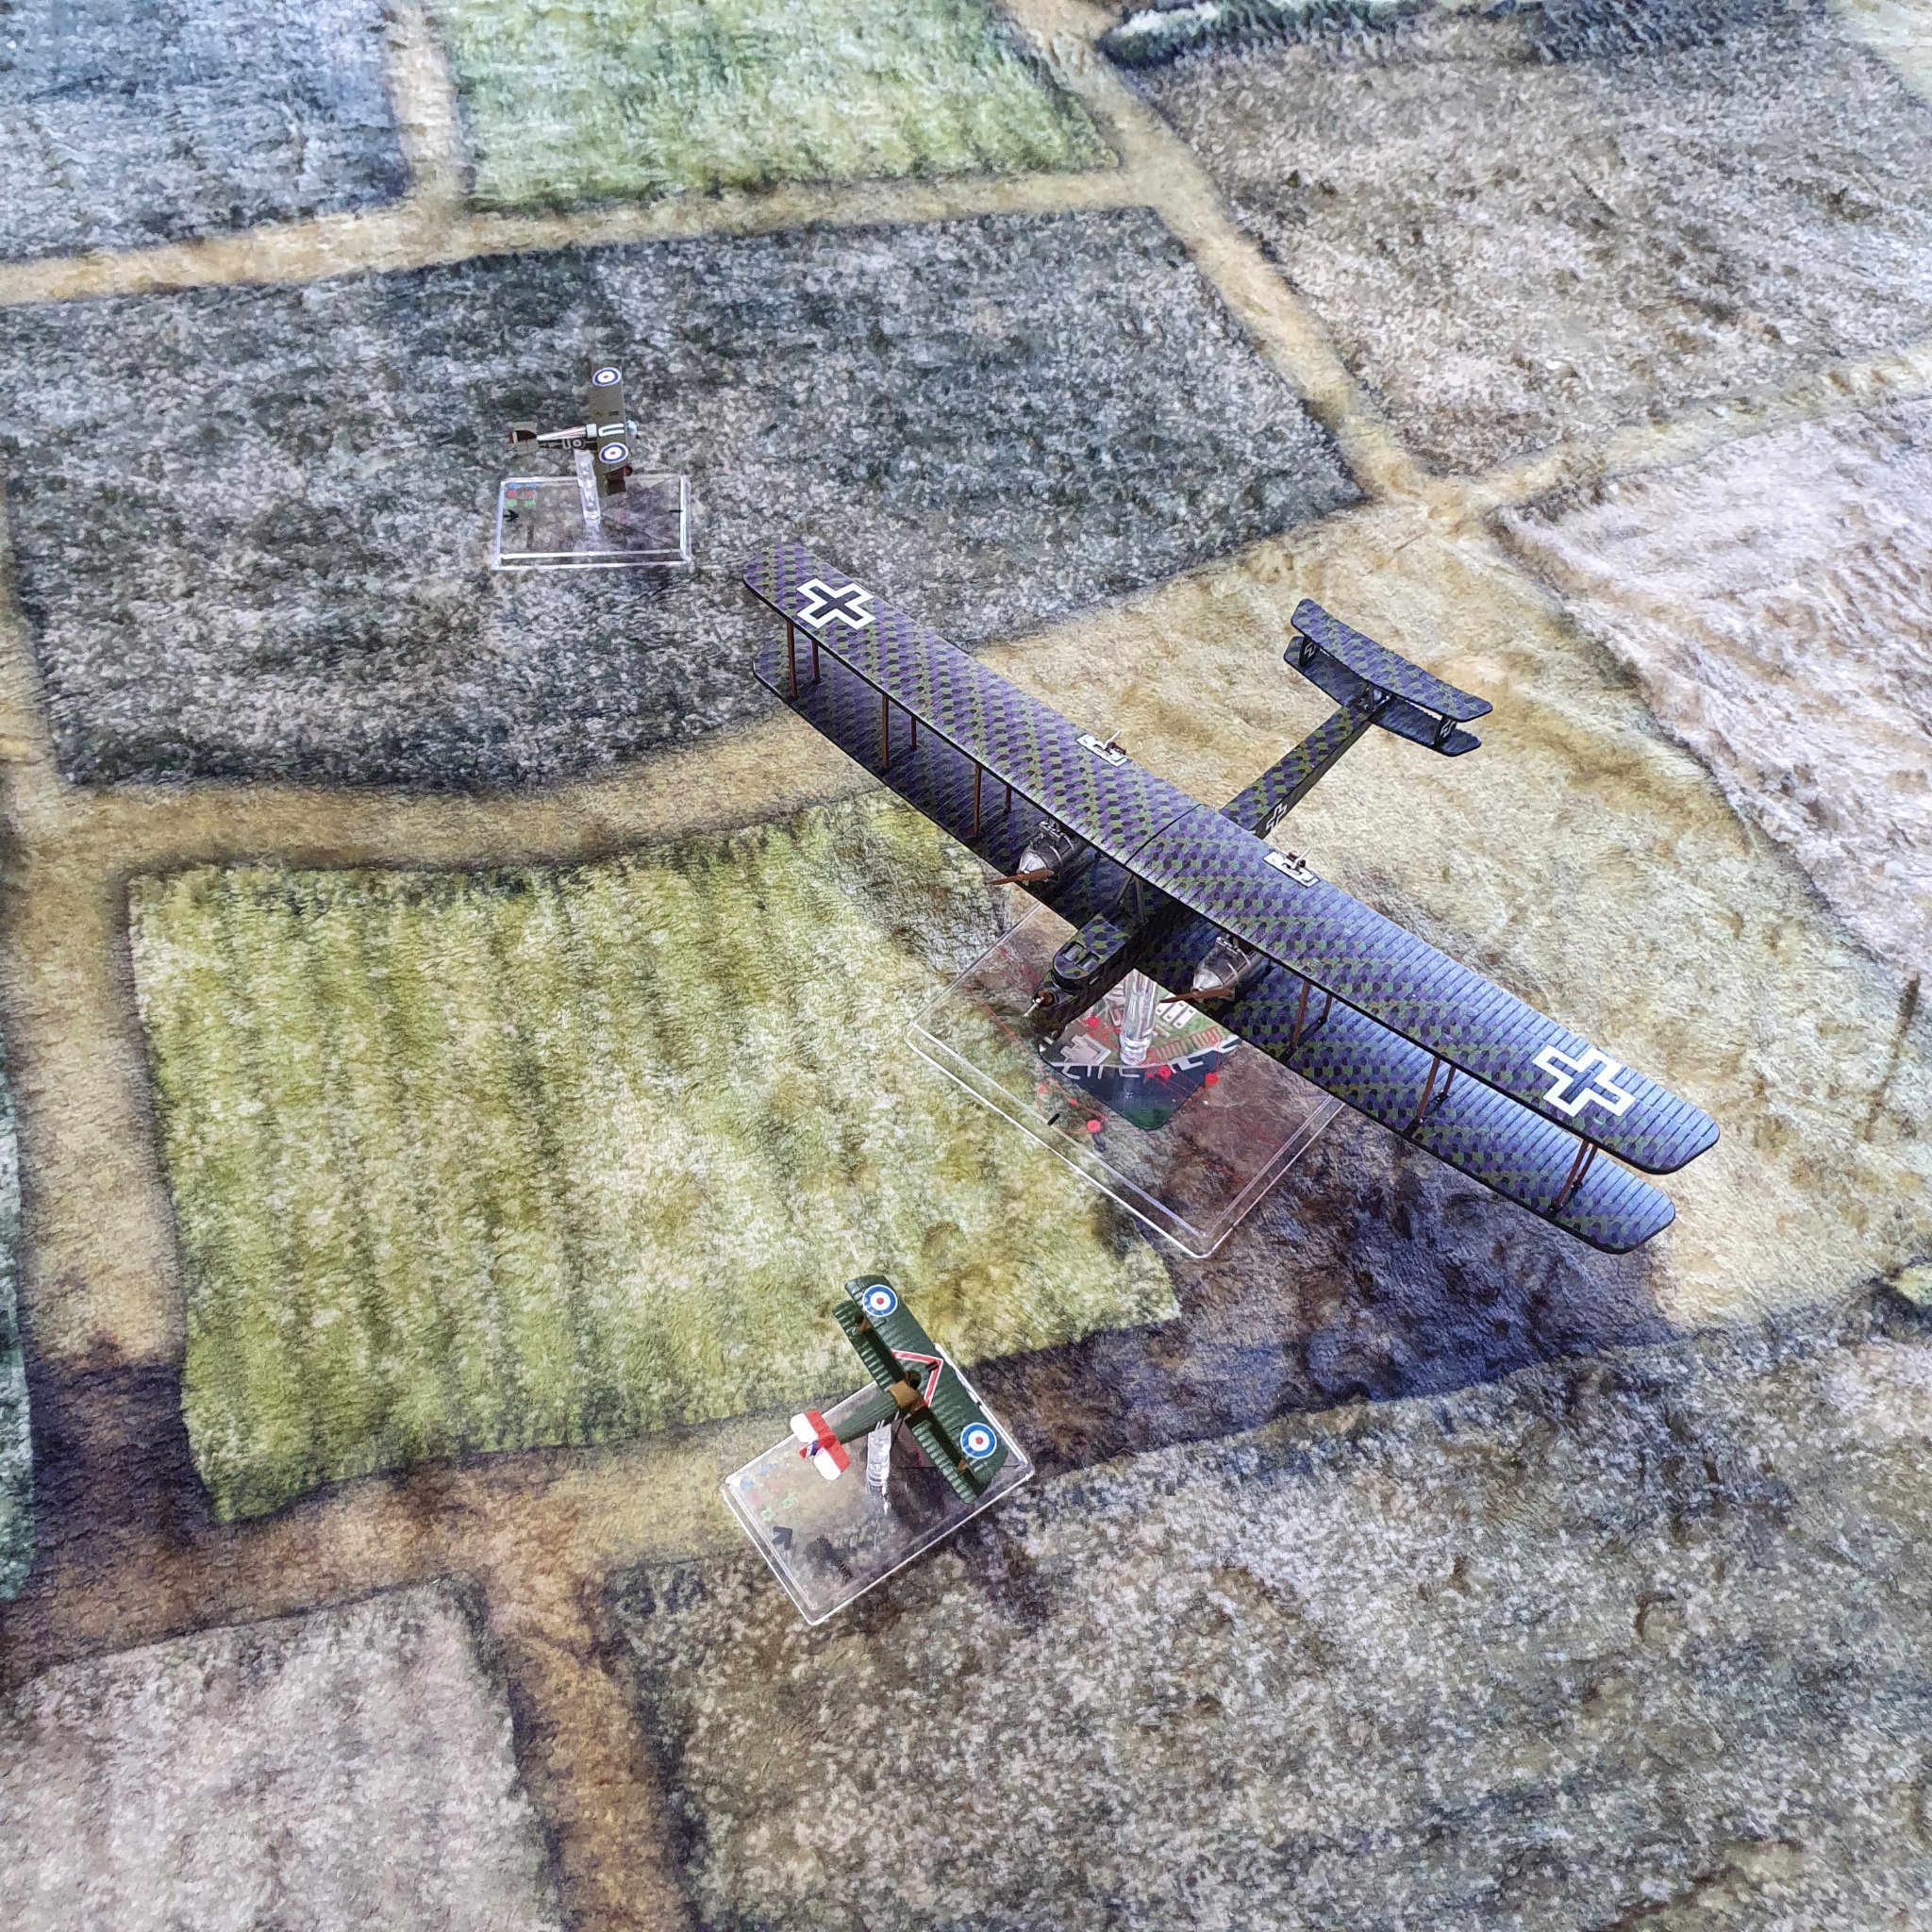  World War 1 Biplane action 